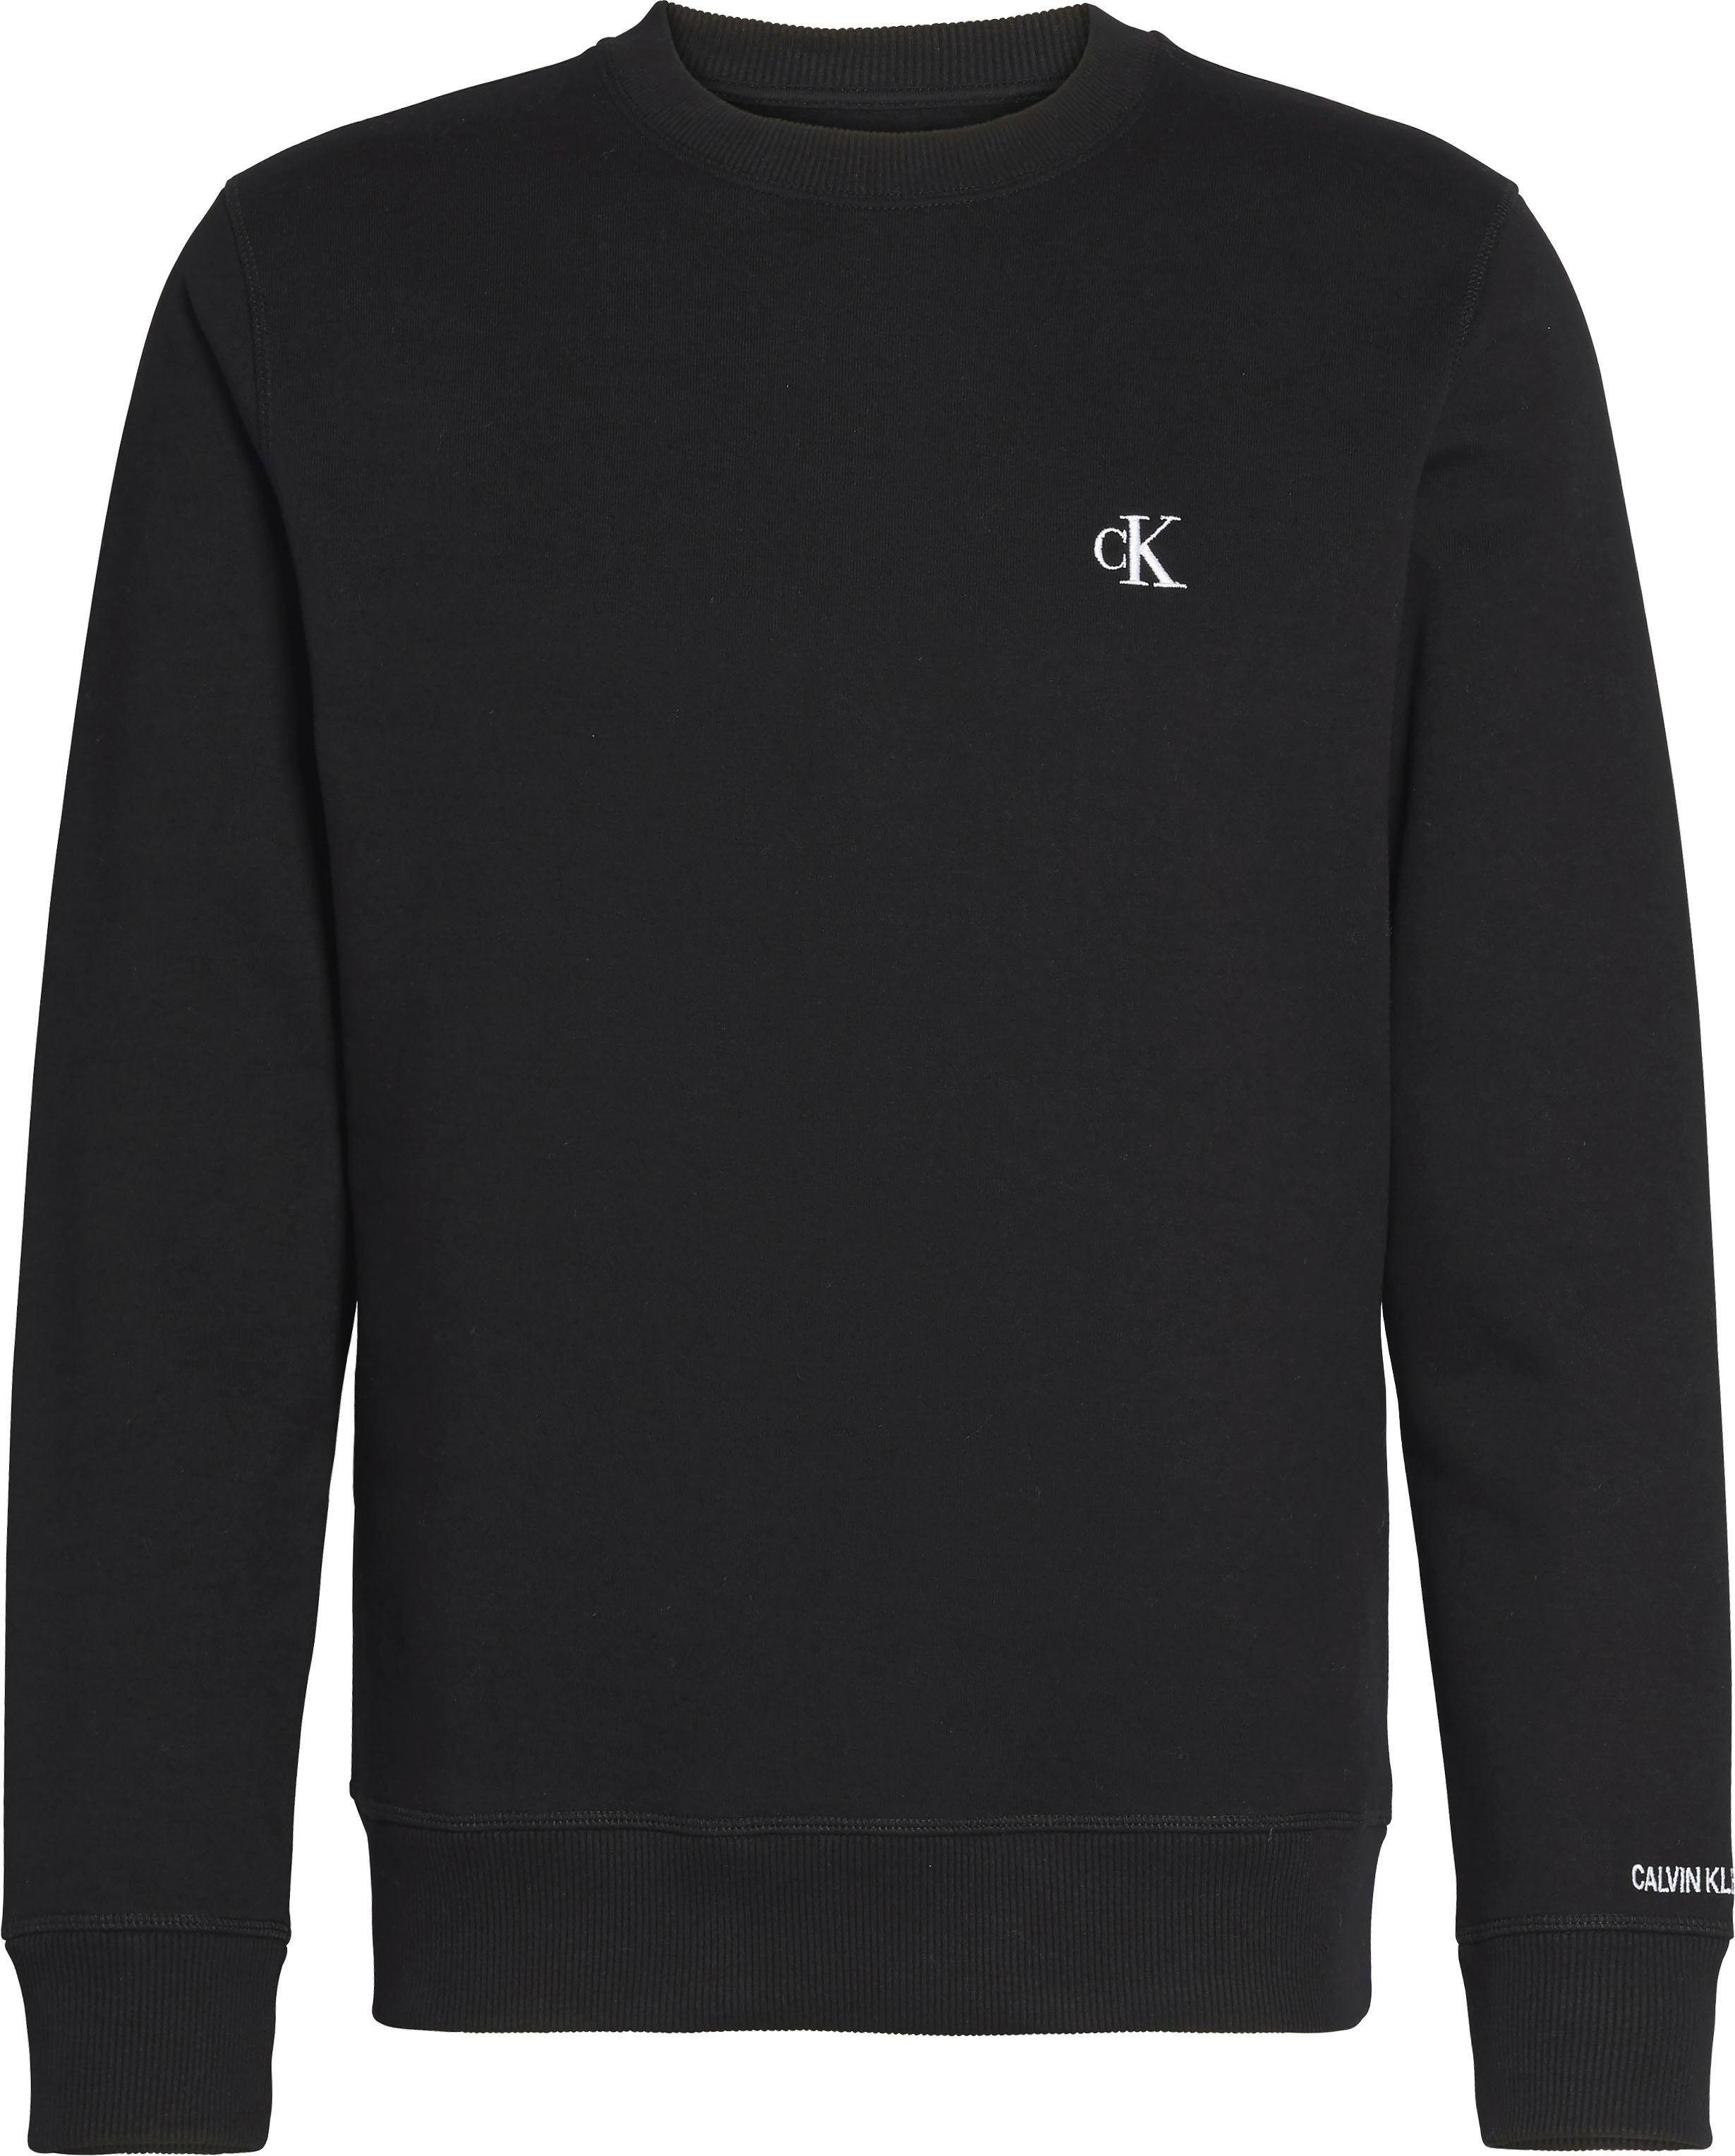 CN Black Calvin Klein REG Sweatshirt ESSENTIAL CK CK Jeans